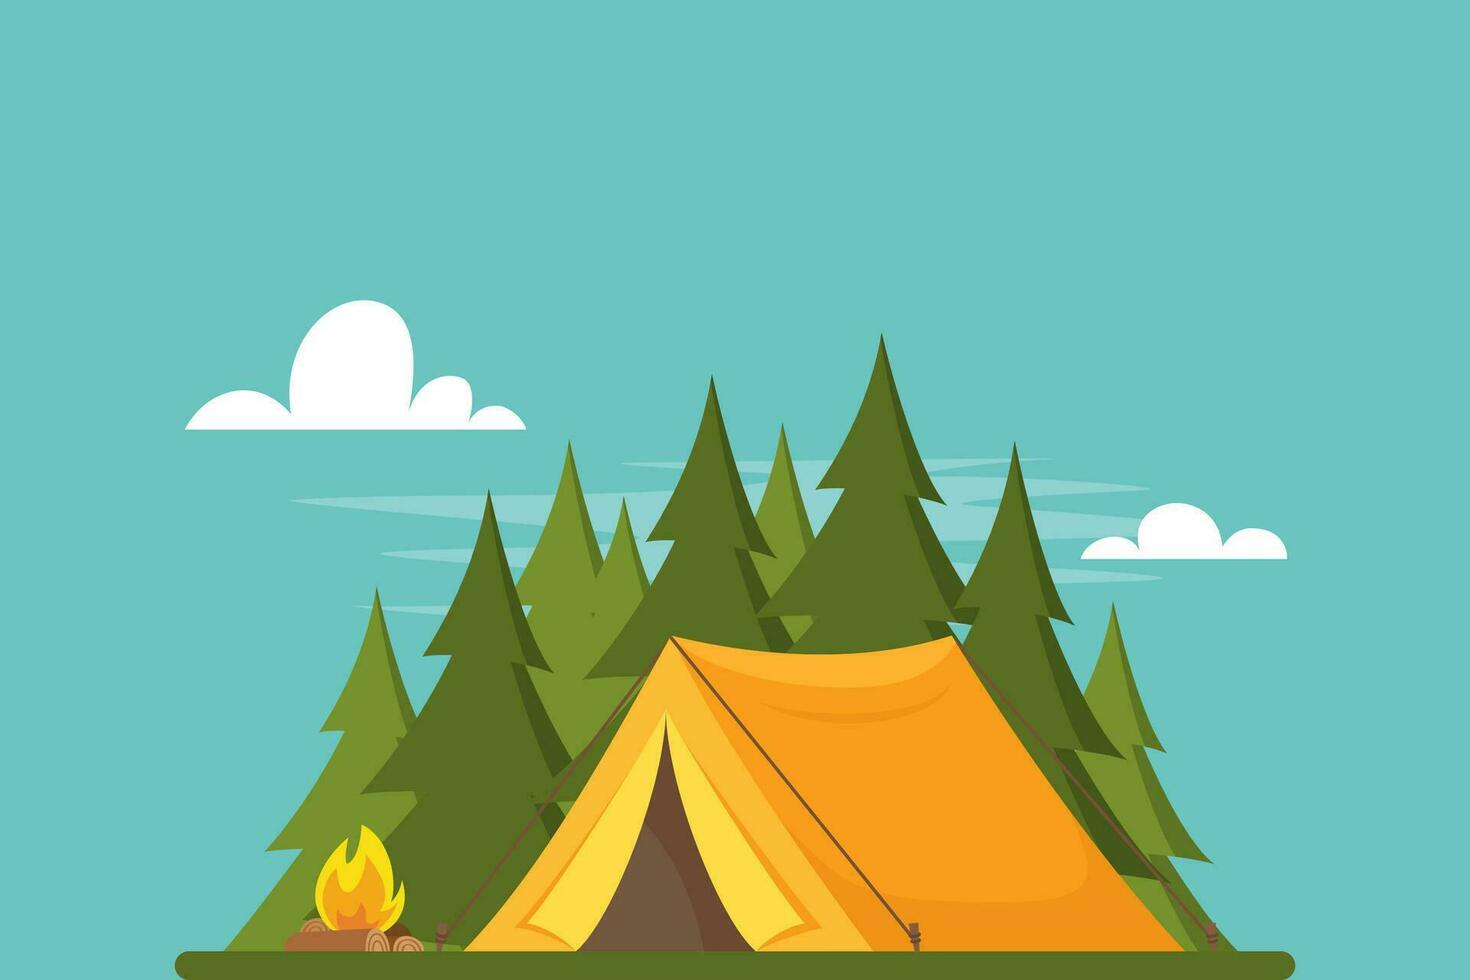 geel tent in Woud. tent, Woud en brand. banier, poster voor klimmen, hiking, trekken sport, avontuur toerisme, reis, backpacken. gemakkelijk vlak vector illustratie.